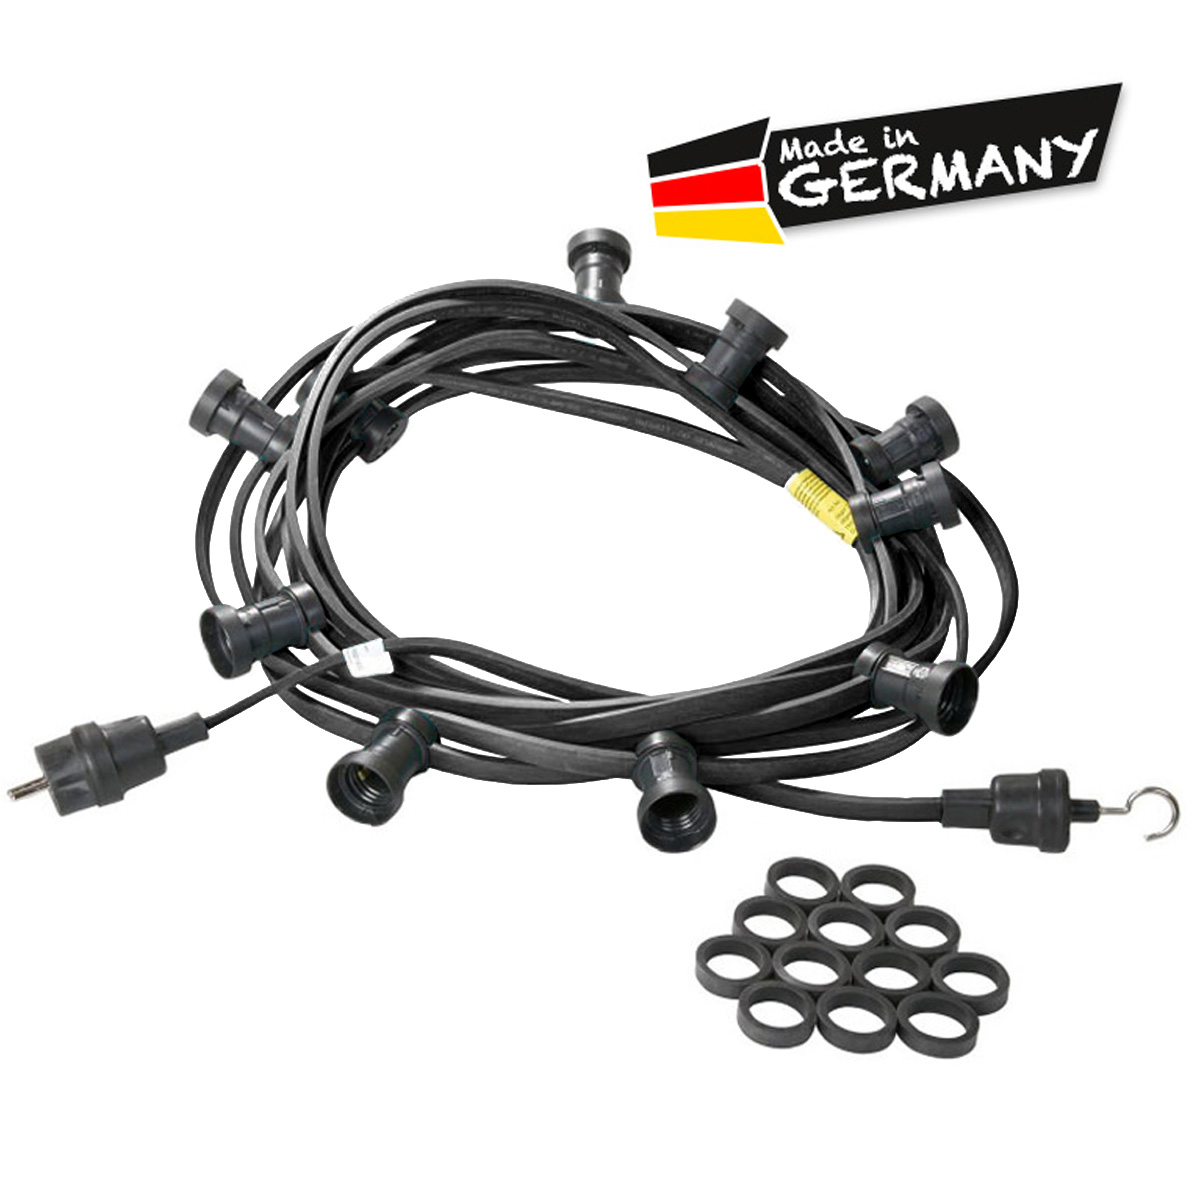 Illu-/Partylichterkette schwarz 20m | Außenlichterkette | Made in Germany | 40 x E27 Schraubfassung